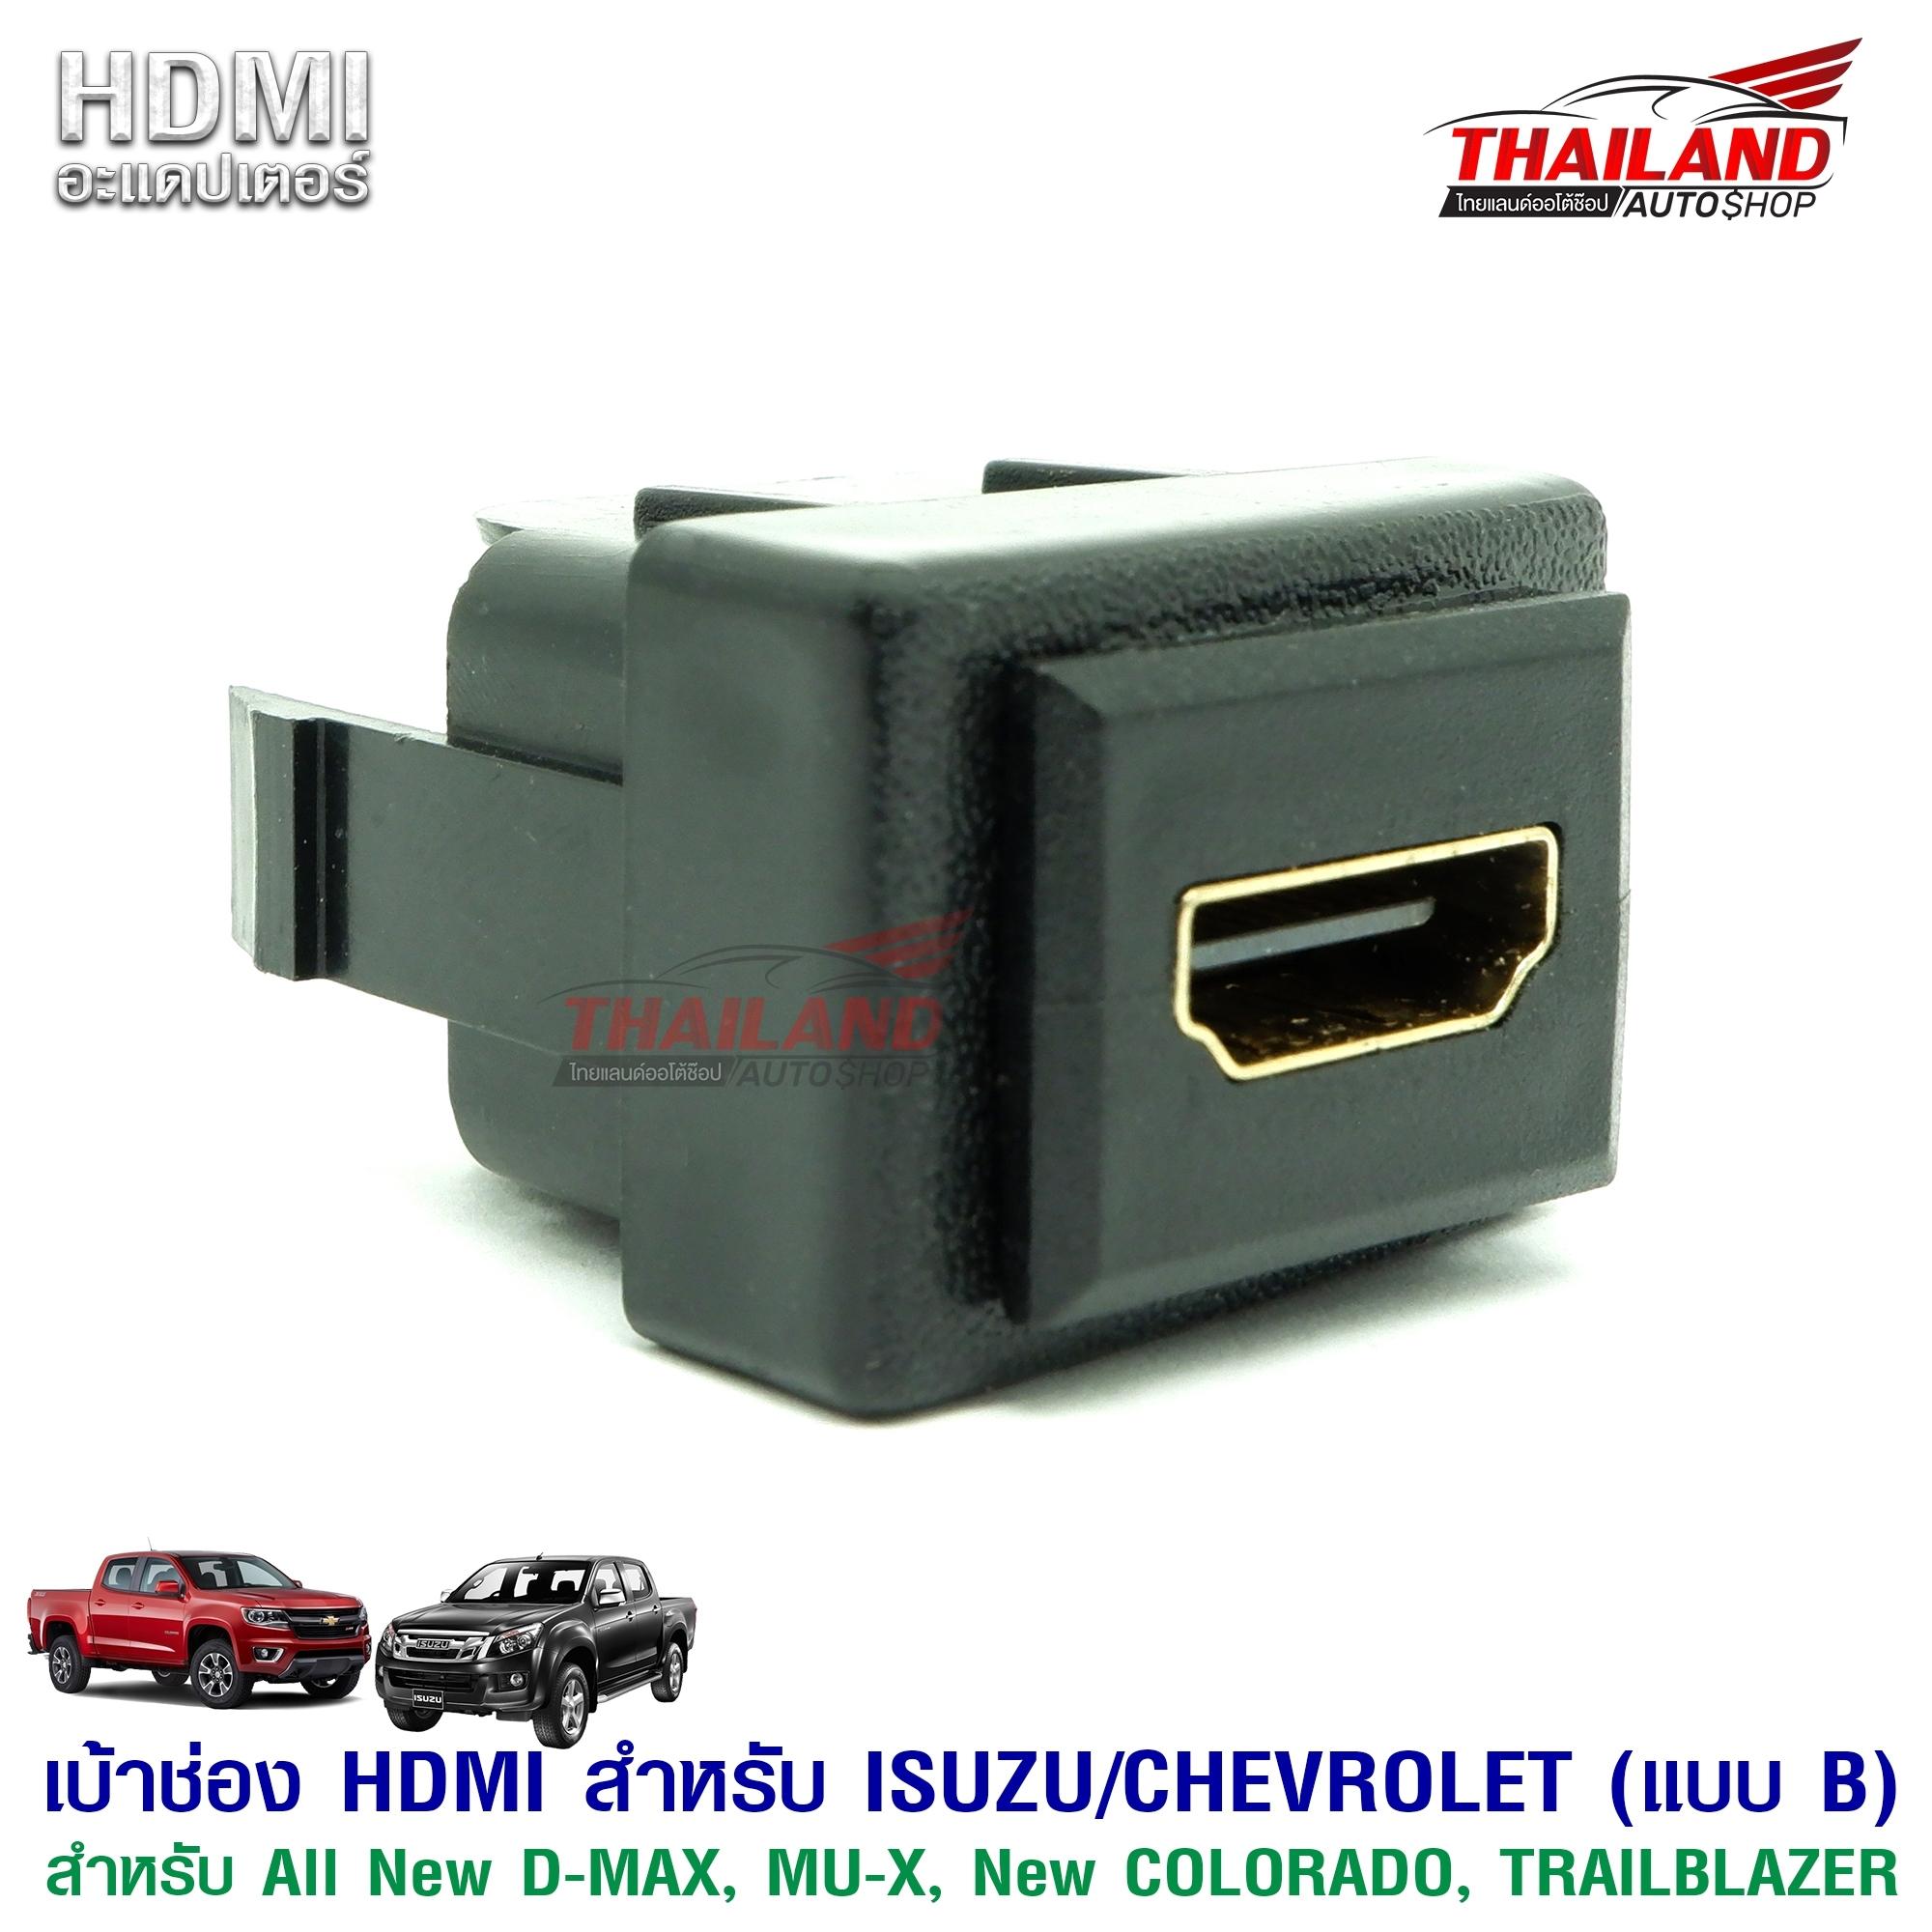 เบ้าต่อ HDMI อะแดปเตอร์ ตรงรุ่น สำหรับรถ ISUZU / CHEVROLET  รุ่น ALL NEW D-MAX / MU-X / NEW COLORADO / TRAILBLAZER  (แบบ B )